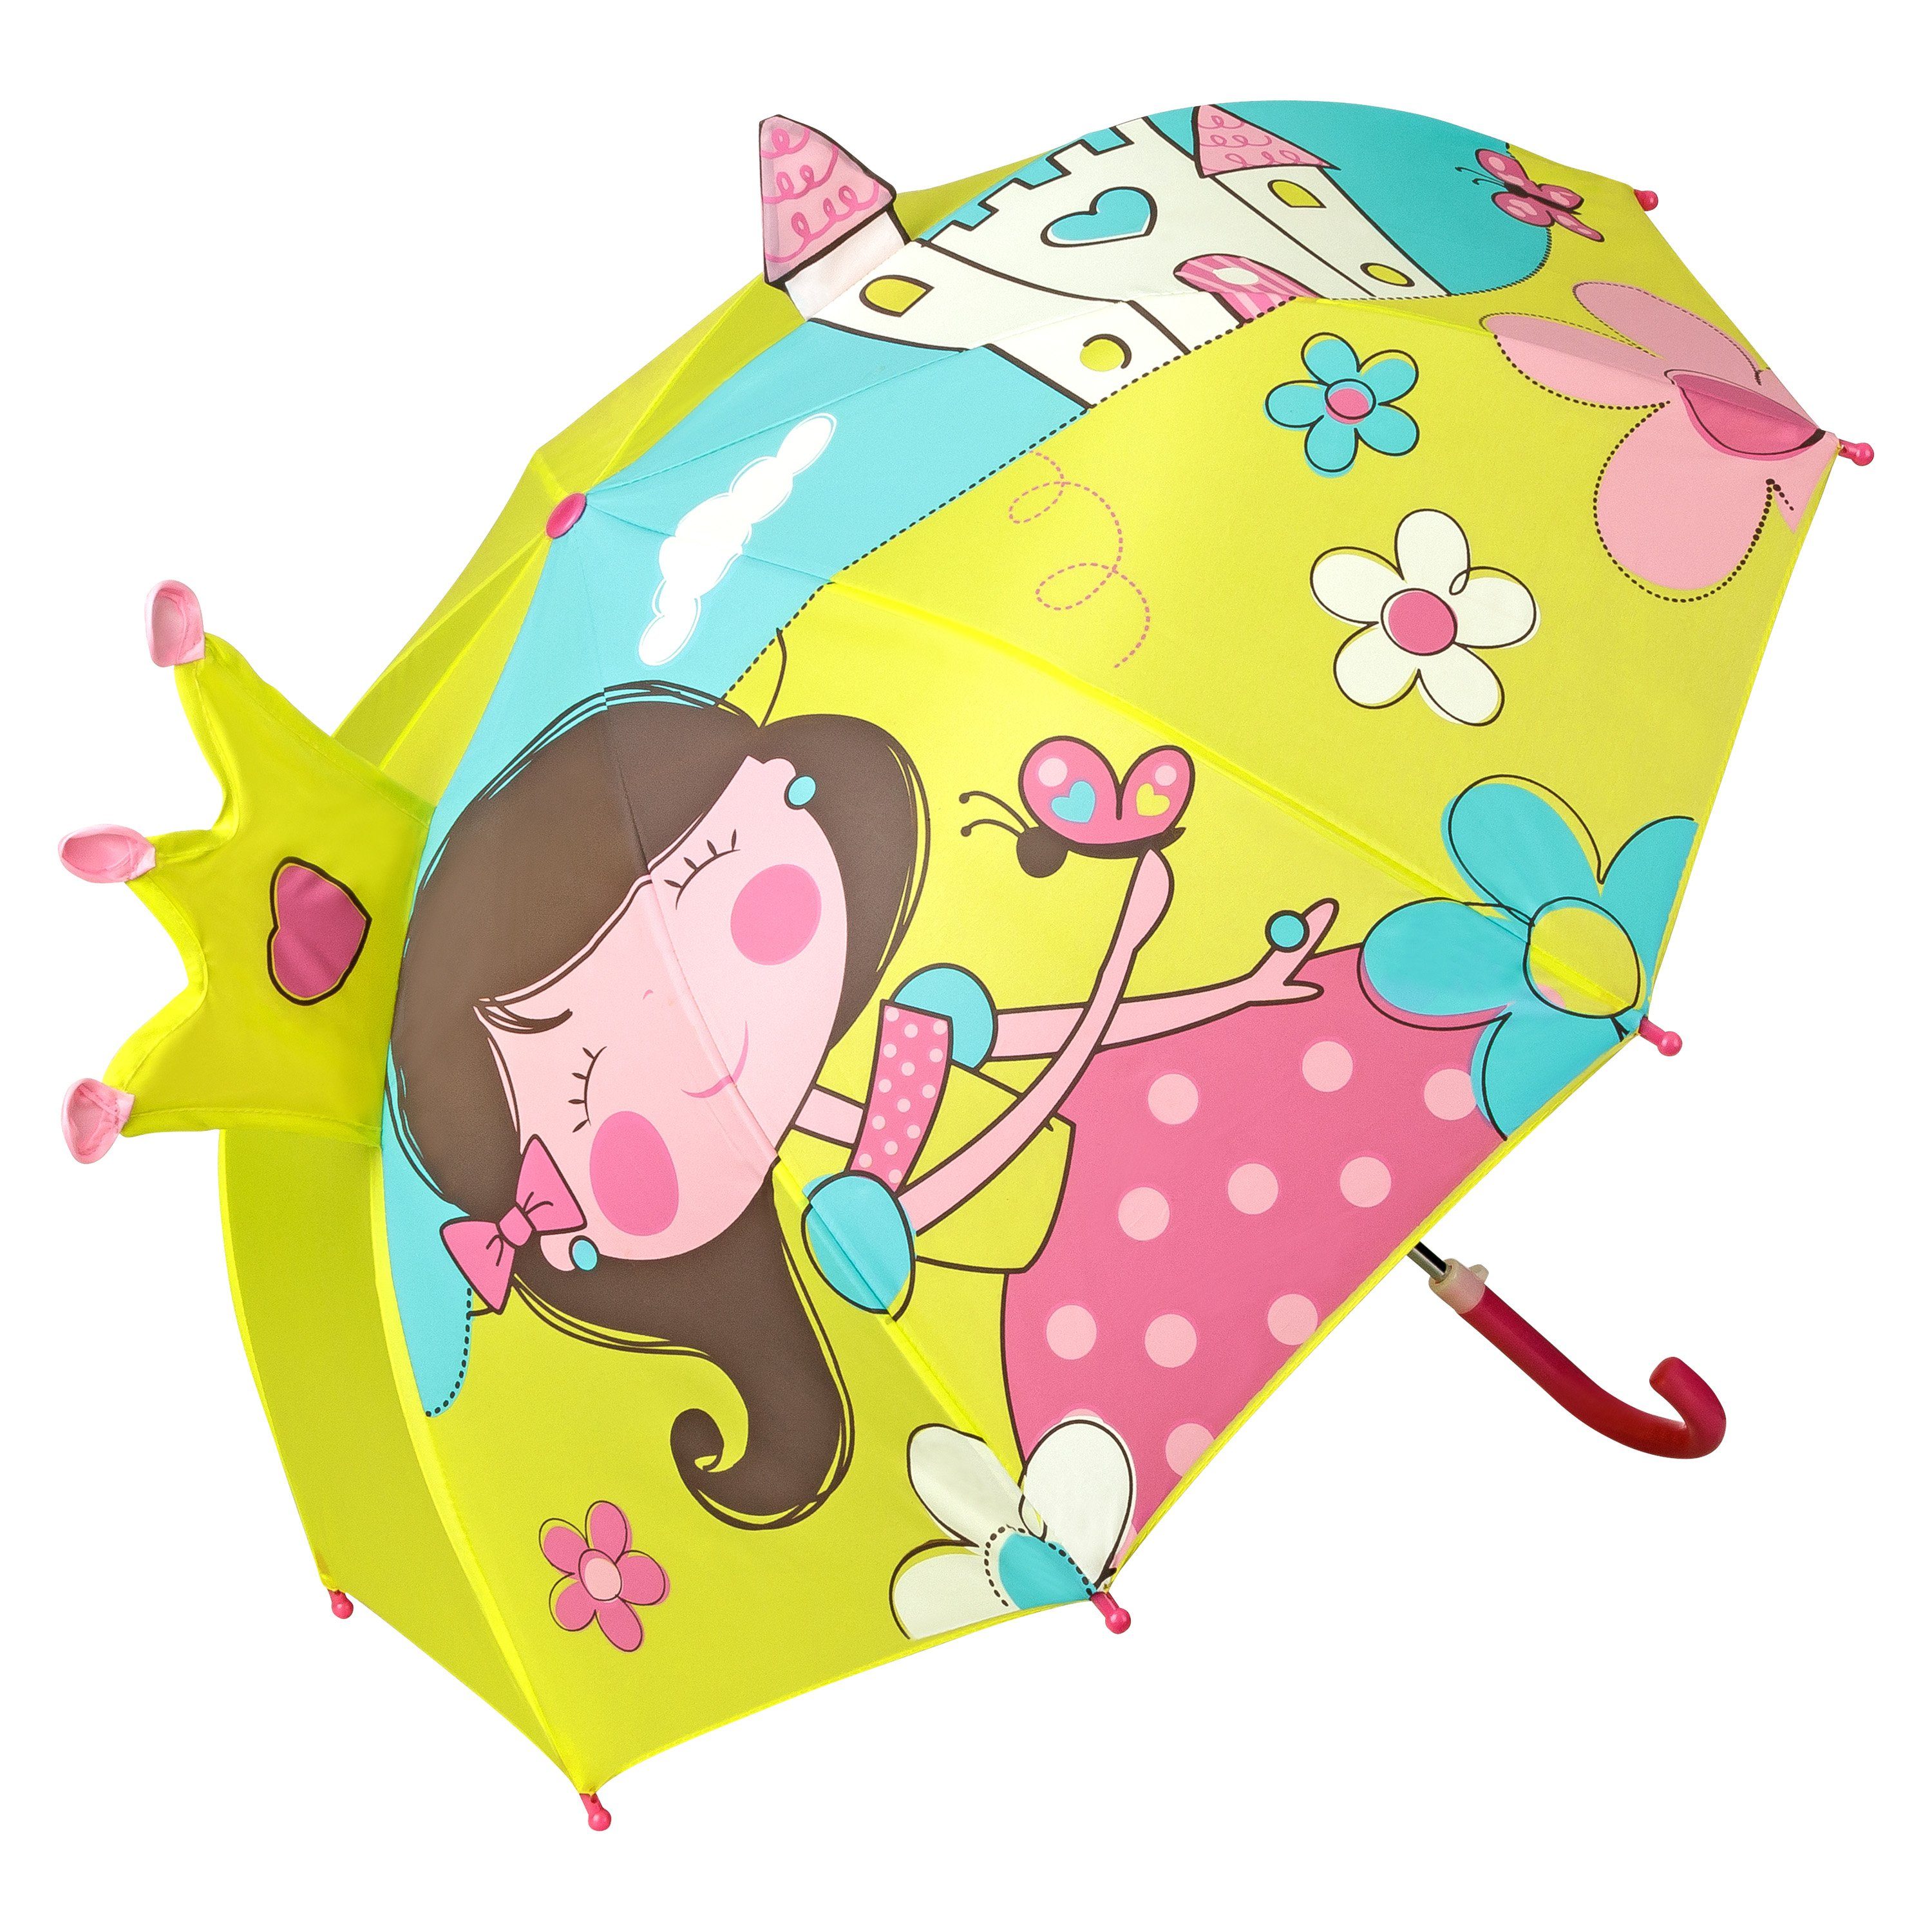 von Lilienfeld Stockregenschirm »VON LILIENFELD Regenschirm Prinzessin mit  Schloß Kind Kinderschirm Kinderregenschirm Junge Mädchen bis ca. 8 Jahre«,  3D online kaufen | OTTO